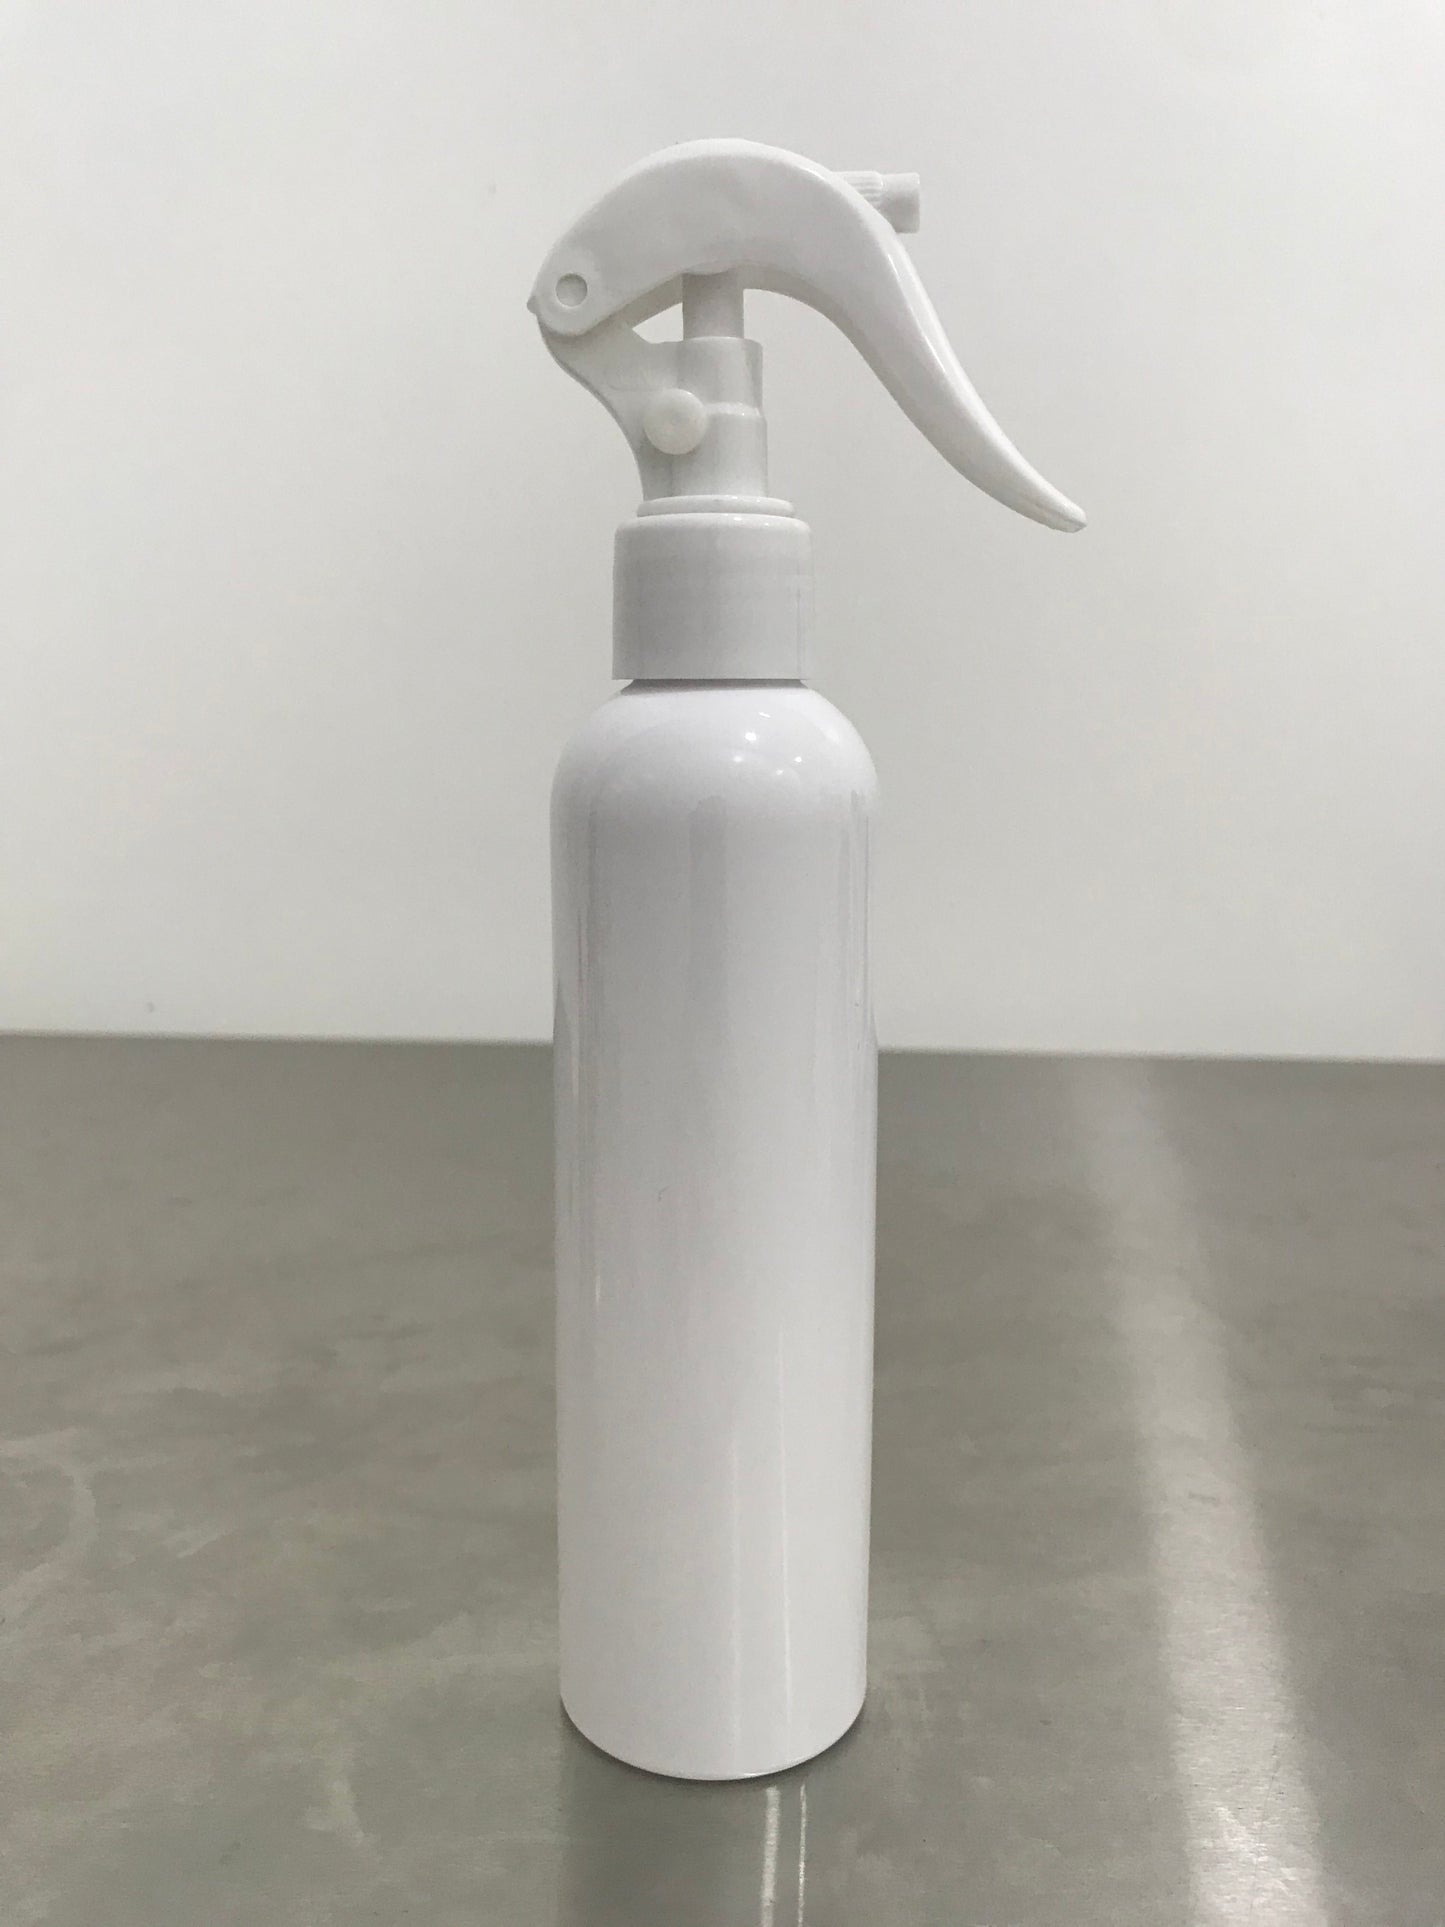 200ml Trigger Spray Plastic Bottle